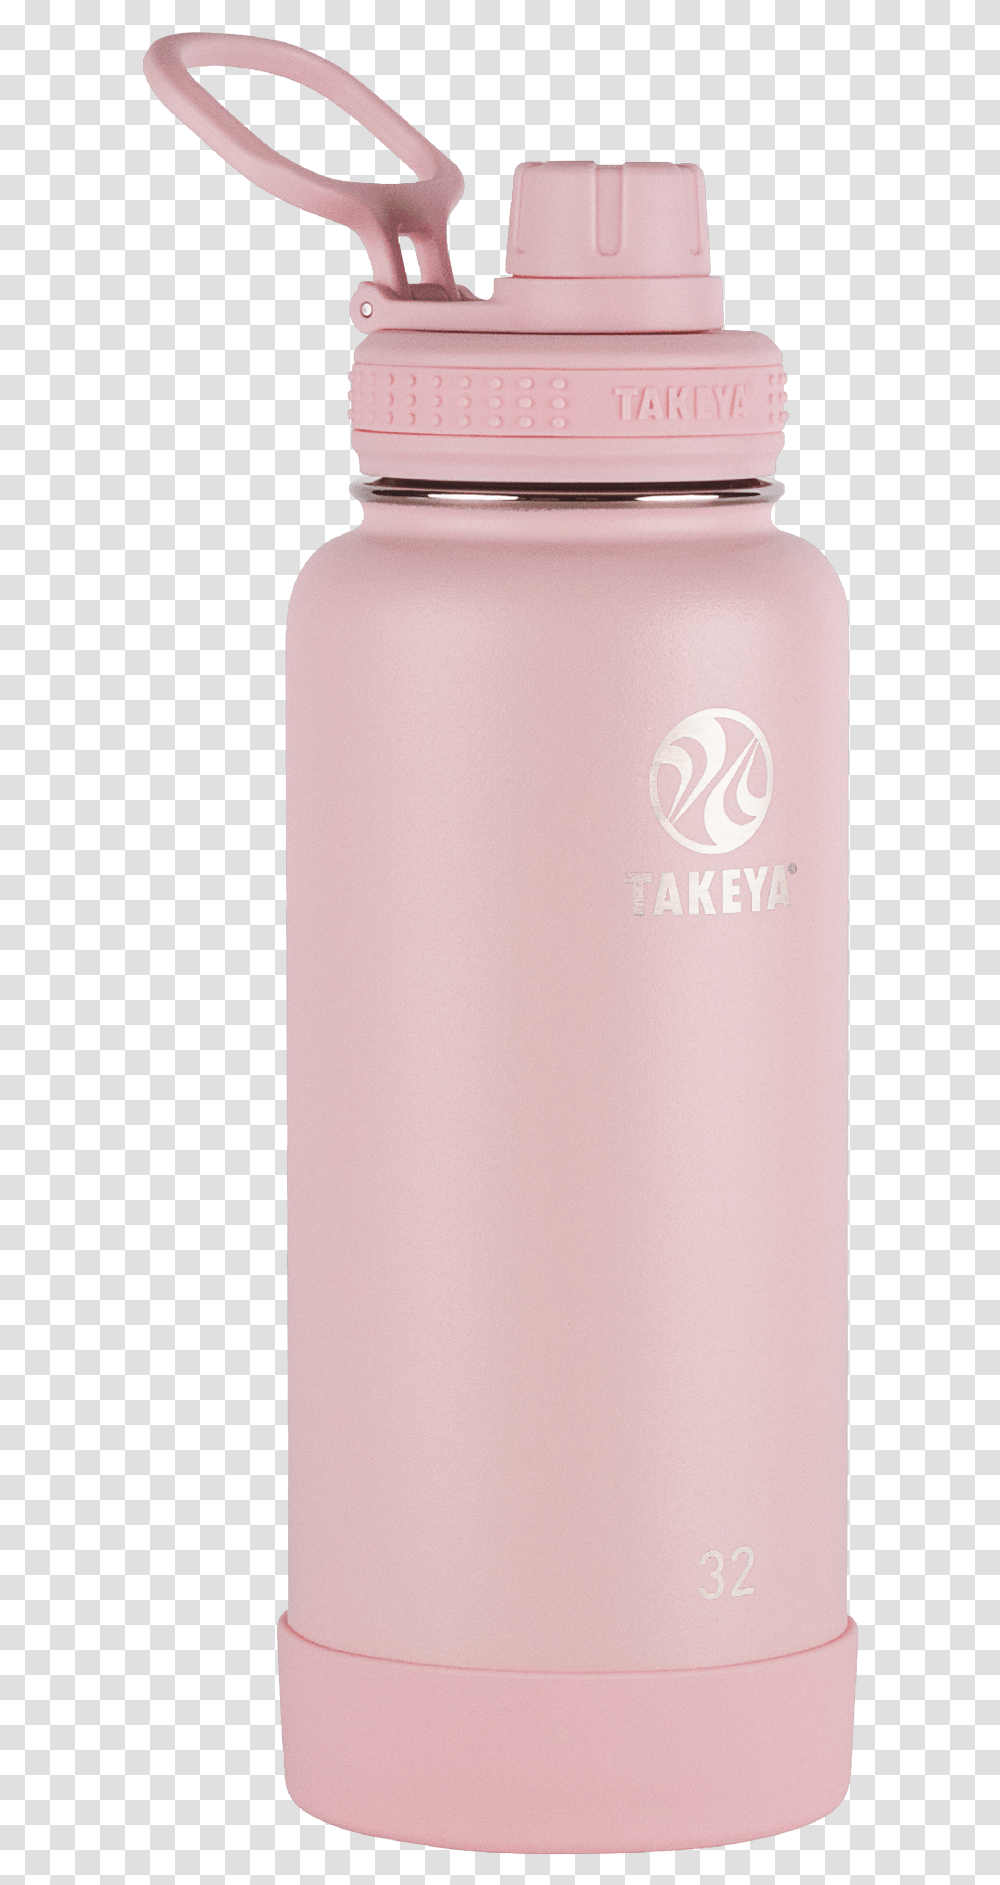 Pink Takeya Water Bottle, Milk, Beverage, Drink, Aluminium Transparent Png